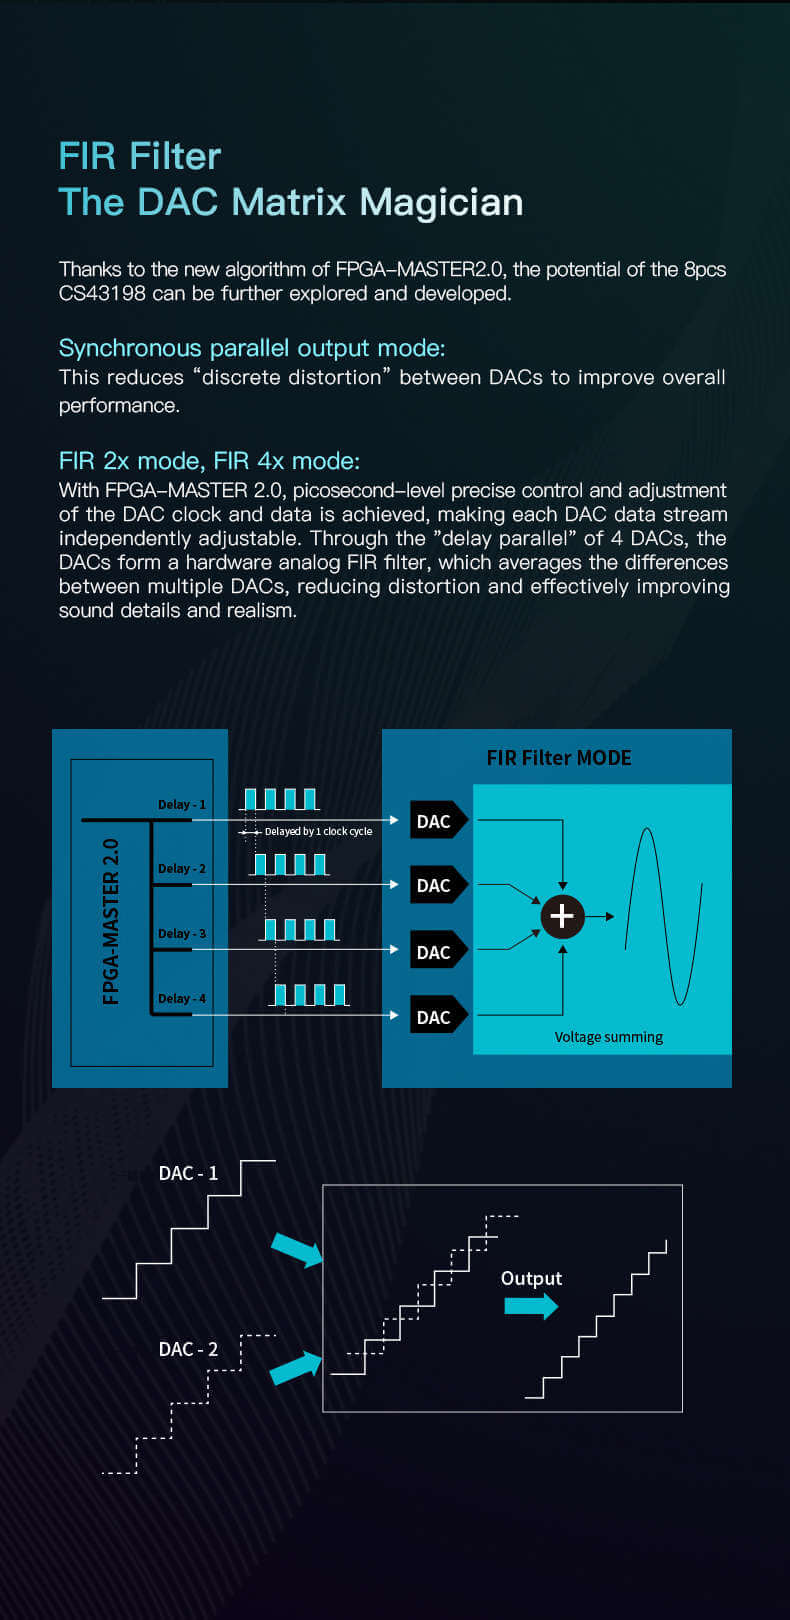 Le filtre FIR, souvent considéré comme le magicien de la matrice DAC, prend une nouvelle dimension avec le nouvel algorithme du FPGA-MASTER 2.0. Il permet d'explorer et de développer pleinement le potentiel du CS43198 8pcs. En utilisant le mode de sortie parallèle synchrone, la distorsion discrète entre les DAC est réduite pour améliorer les performances globales. Les modes FIR 2x et FIR 4x permettent un contrôle précis, au niveau de la picoseconde, de l'horloge et des données du CNA, permettant ainsi de régler indépendamment chaque flux de données du CNA. Grâce au retard parallèle de 4 DAC, un filtre FIR analogique matériel est formé, réduisant la distorsion et améliorant les détails et le réalisme du son de manière significative.